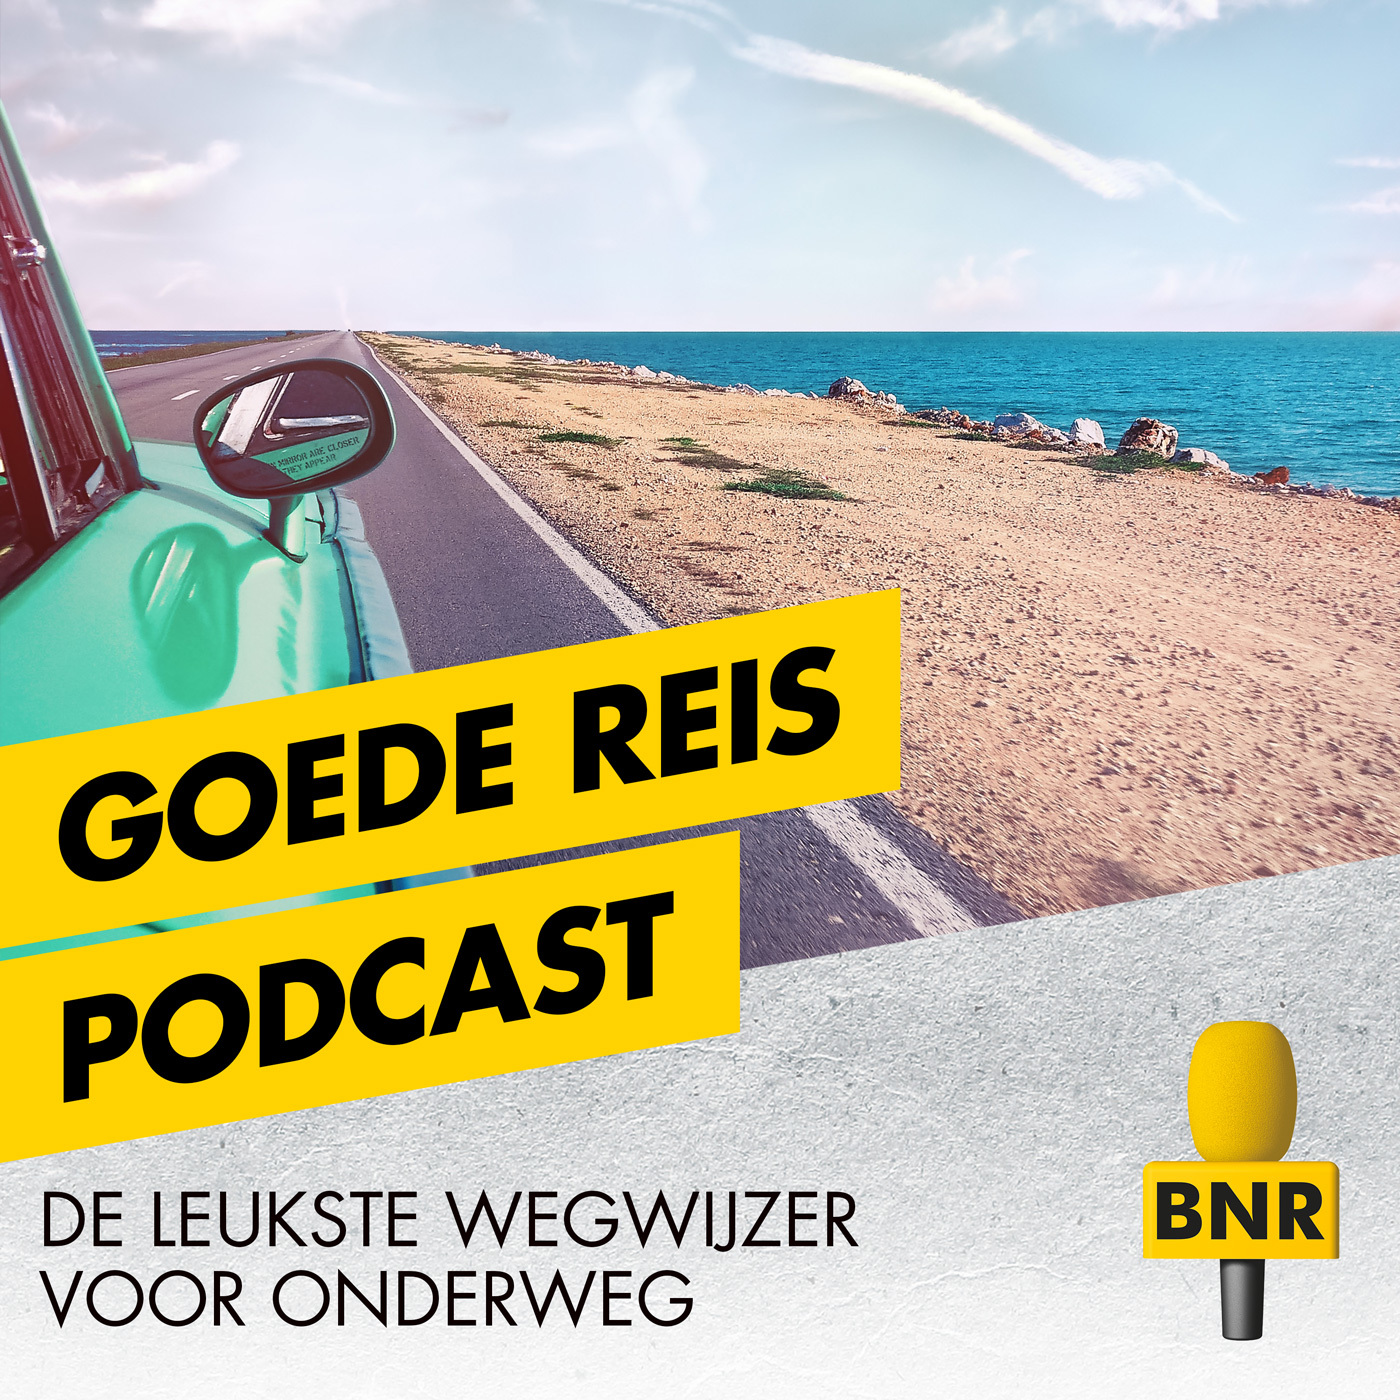 De Goede Reispodcast, de podcast voor reizigers